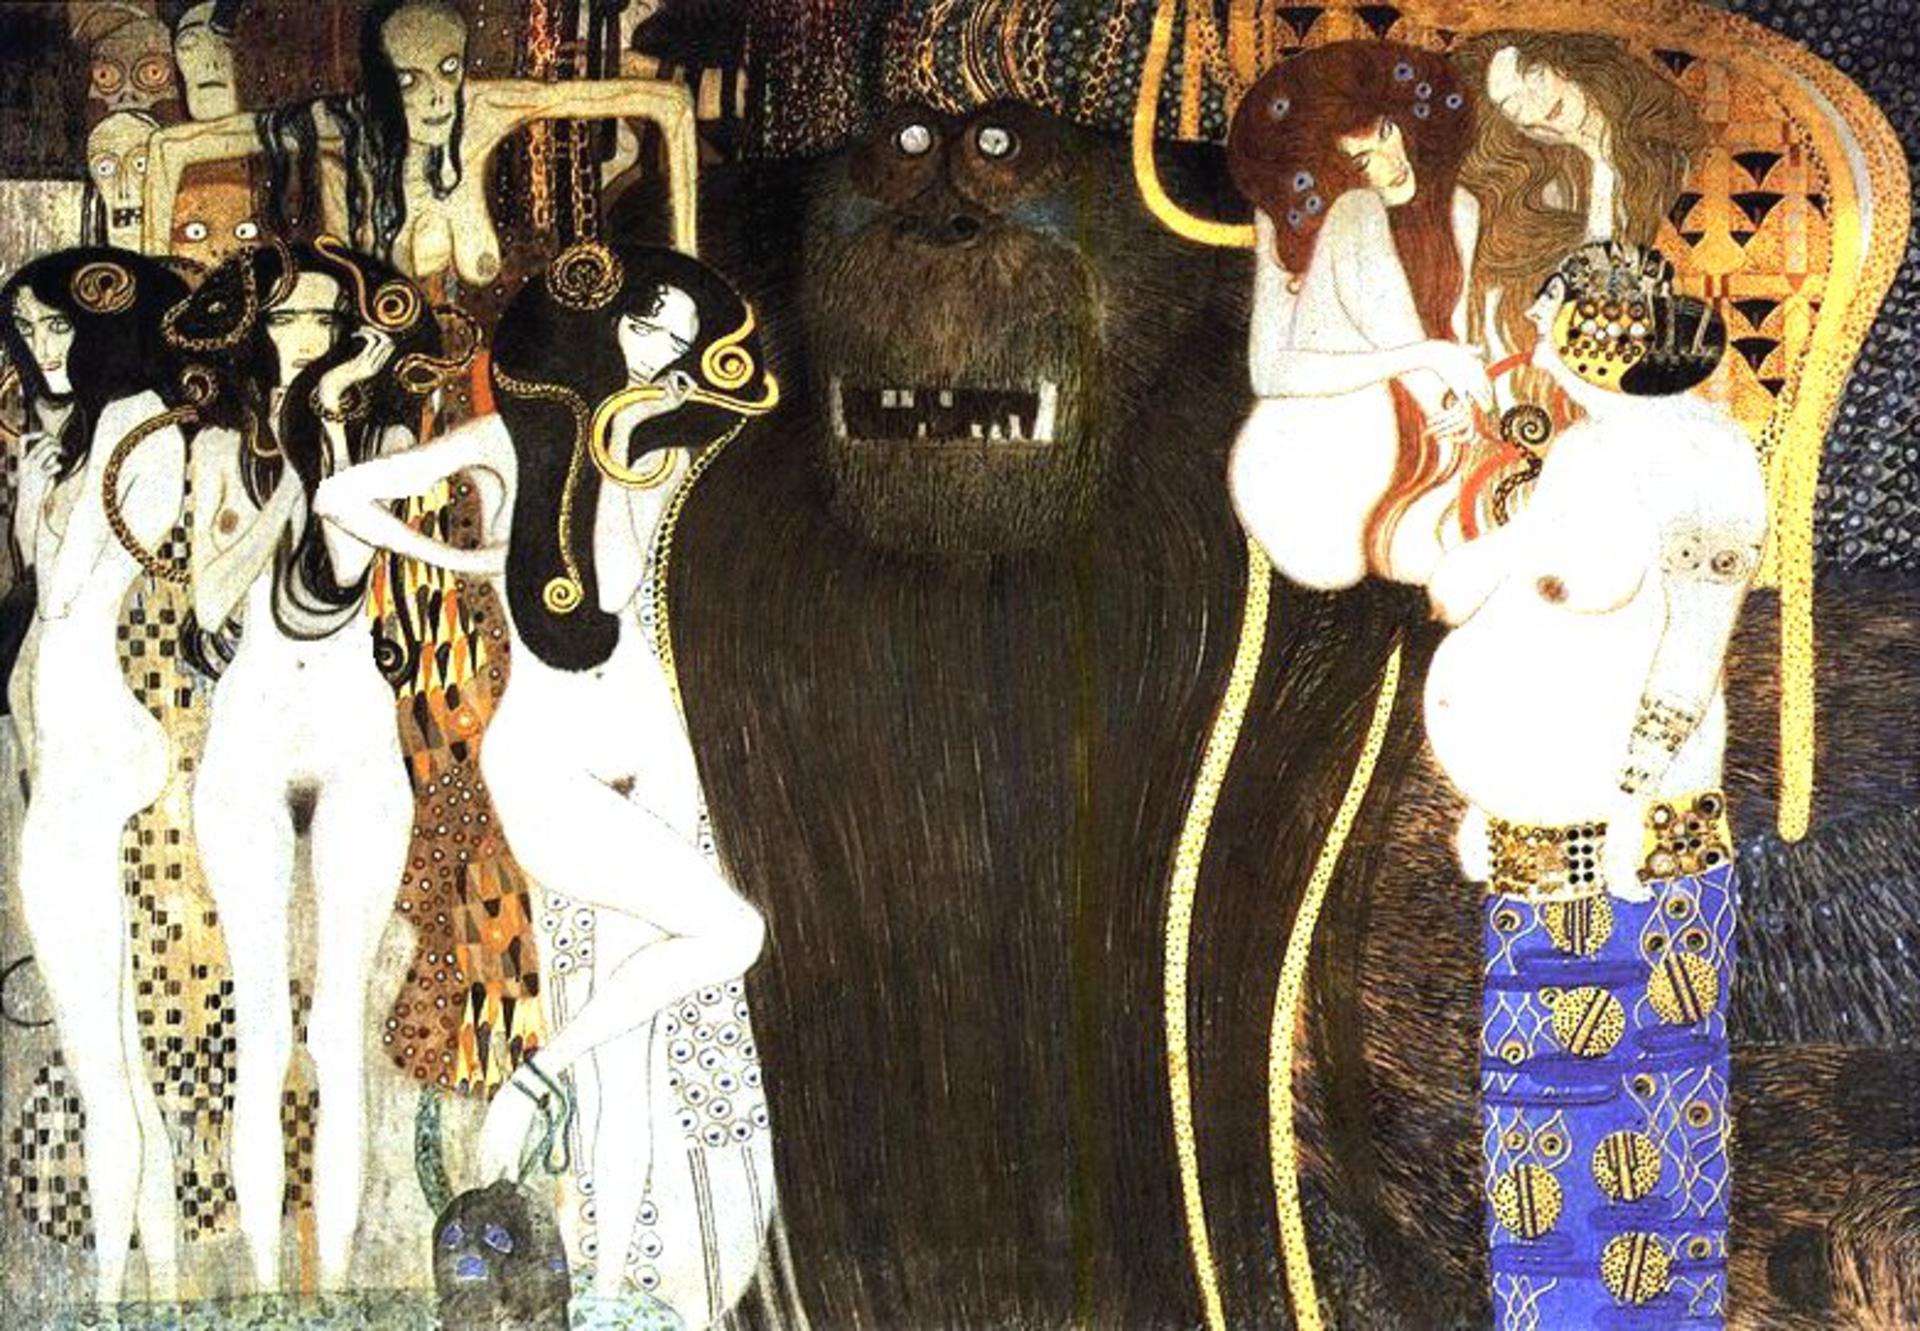 Gustav_Klimt_Beethoven_Frieze_-_Hostile_forces_-_1902_-_Secession_Building_Vienna (1)